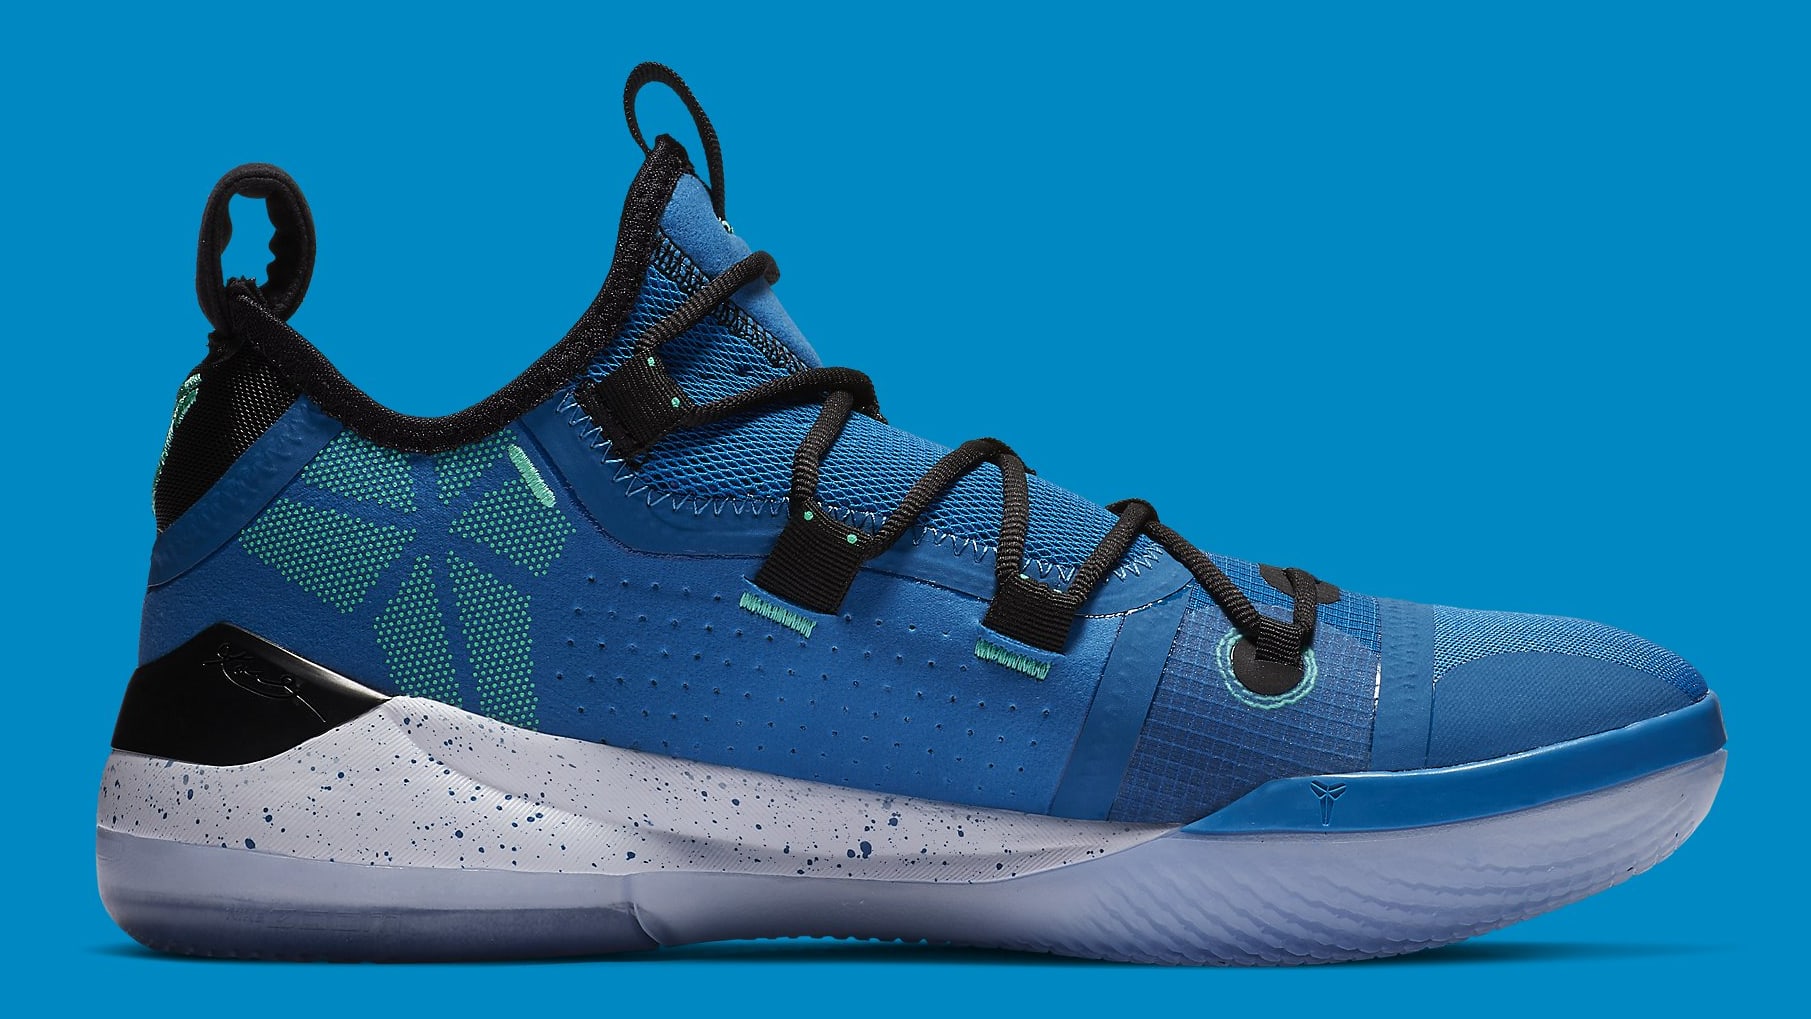 Nike Kobe A.D. Military Blue Sunblush Release Date AV3556-400 Medial